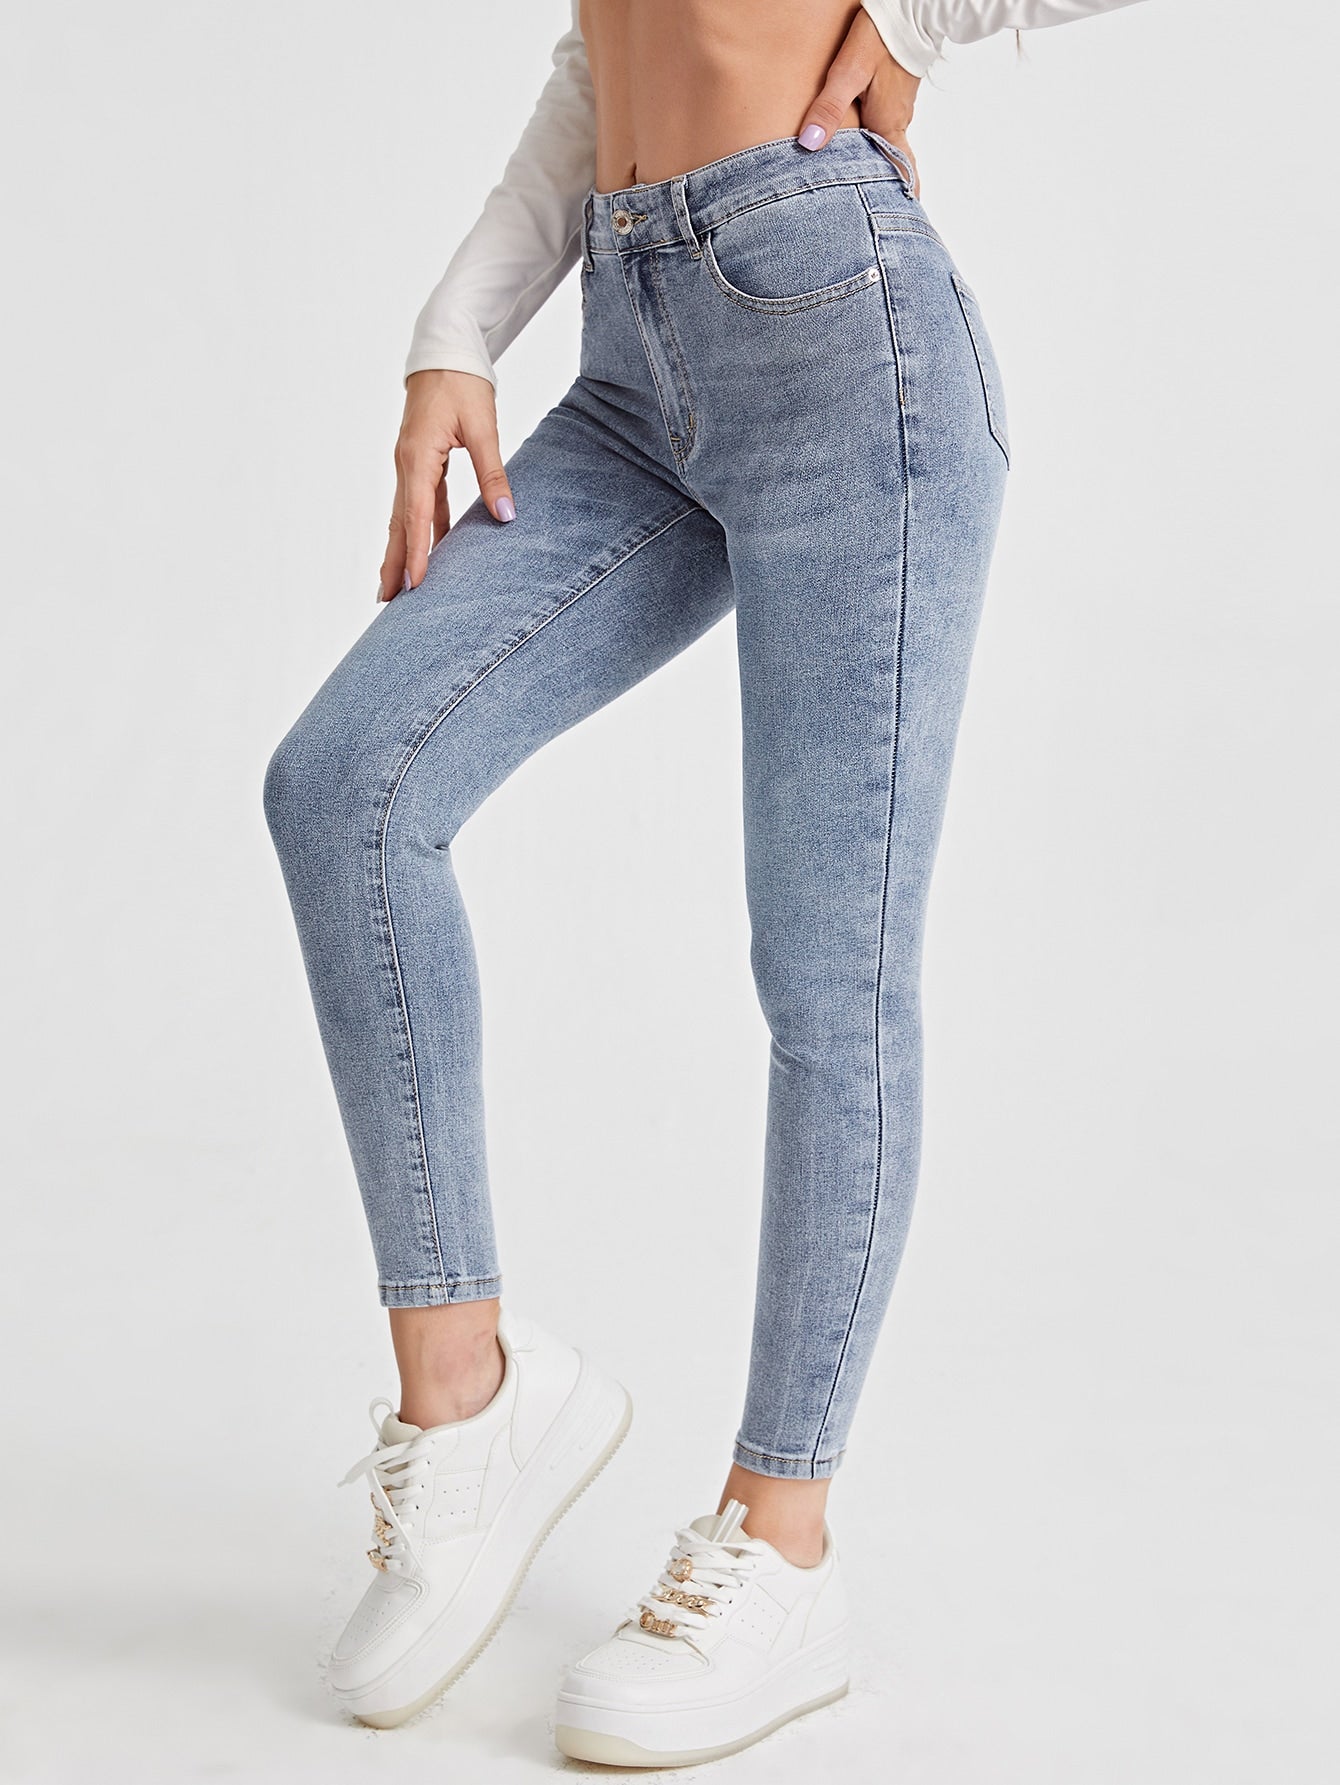 Women Jeans Supplier